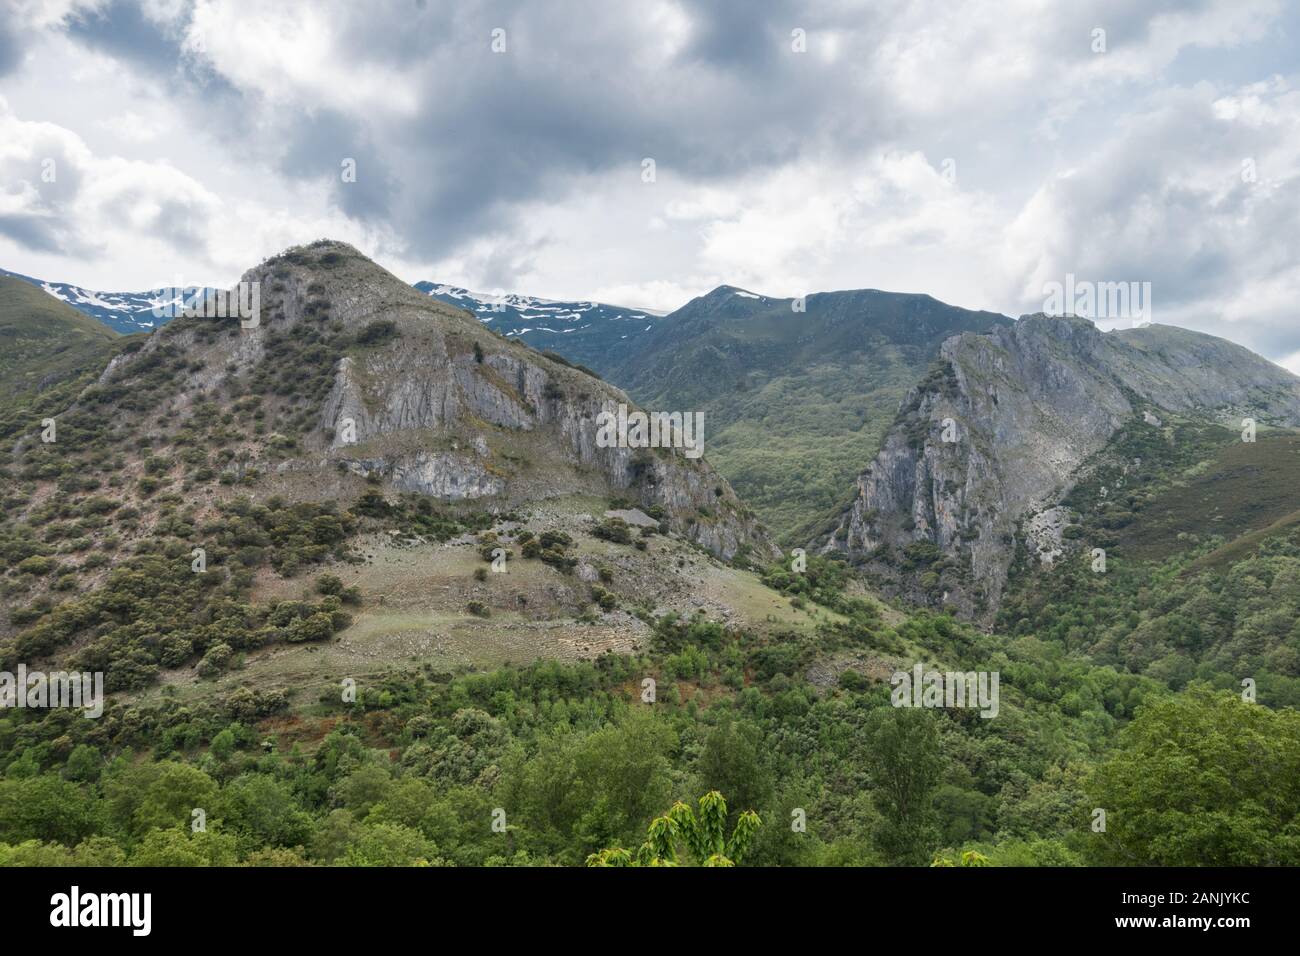 The charm of the mountains of Peñalba de Santiago Stock Photo